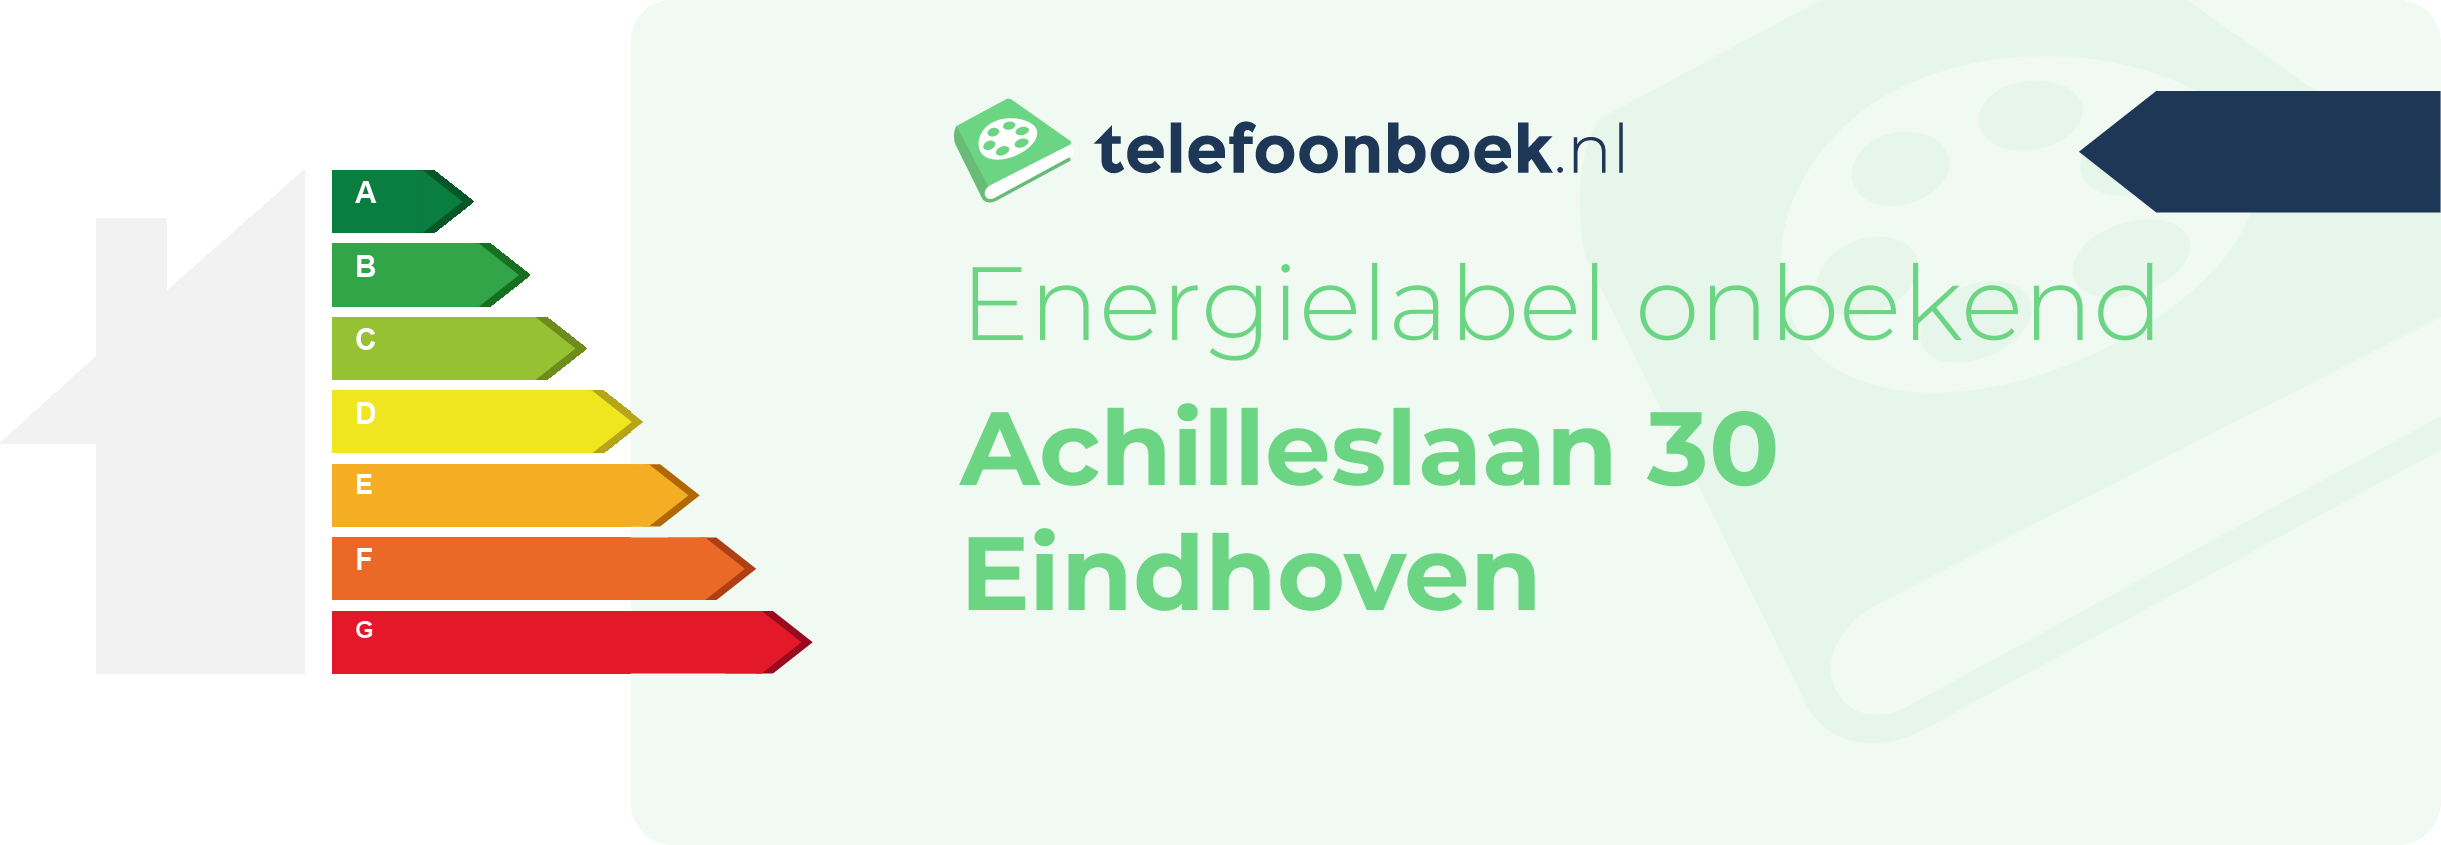 Energielabel Achilleslaan 30 Eindhoven